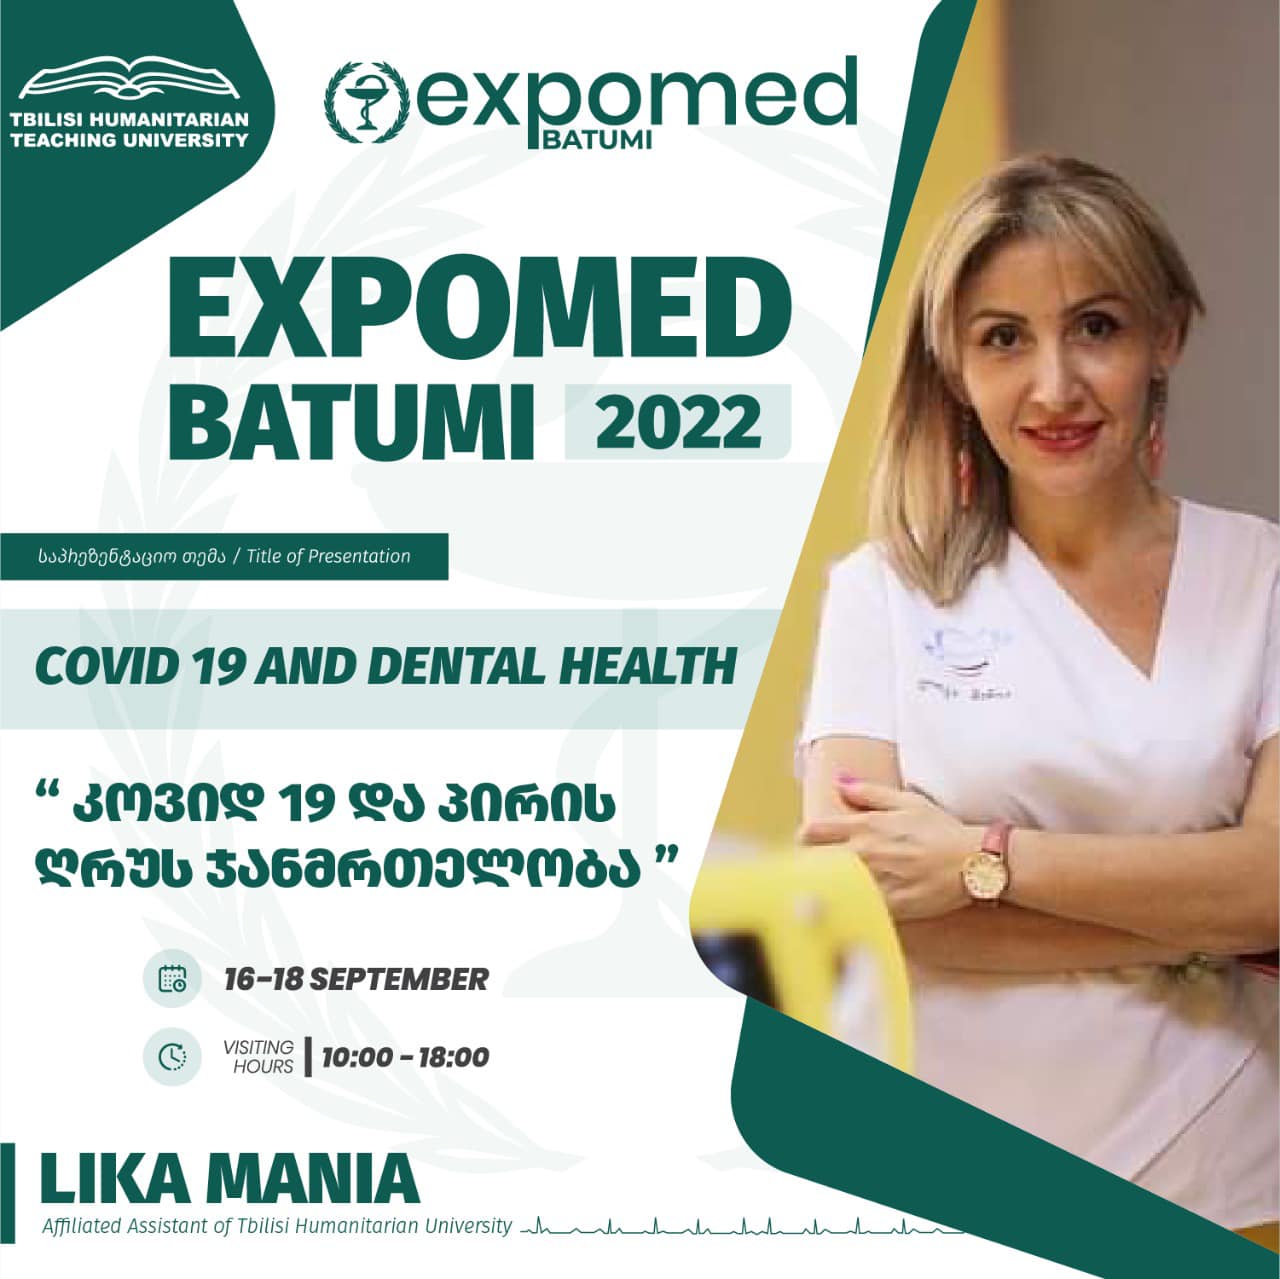 Expo Med Batumi 2022 -В рамках выставки